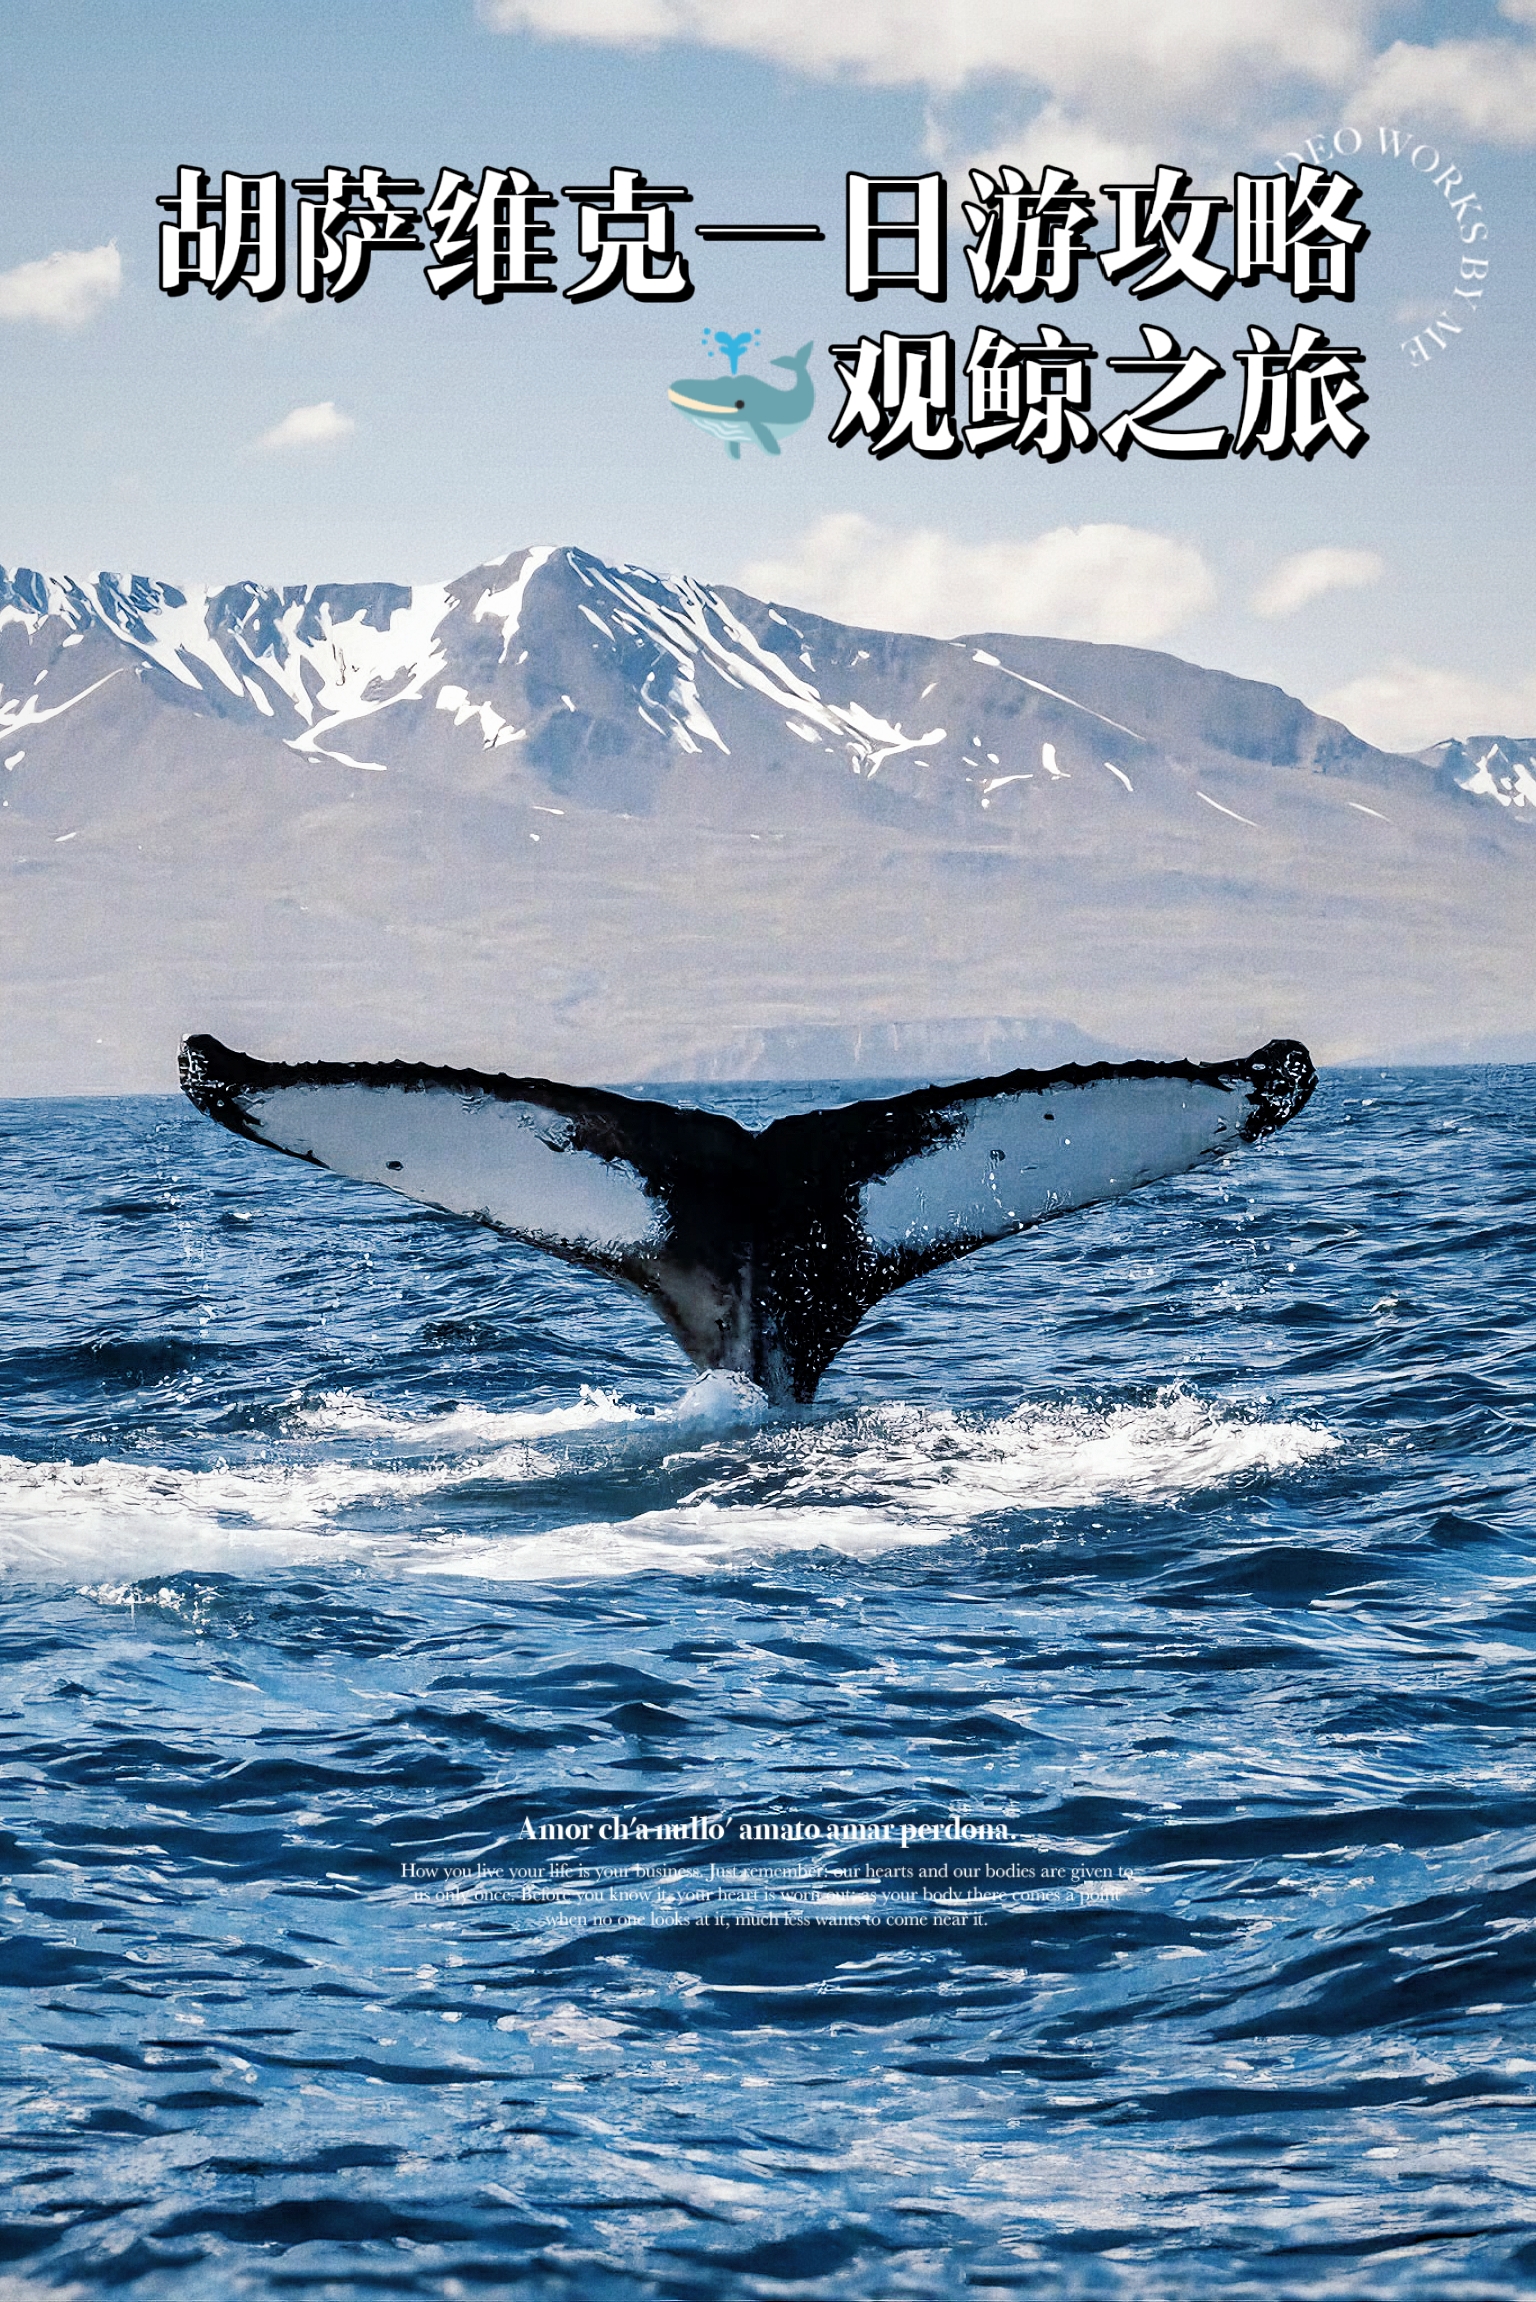 🐋胡萨维克游玩攻略，玩转冰岛观鲸之都！